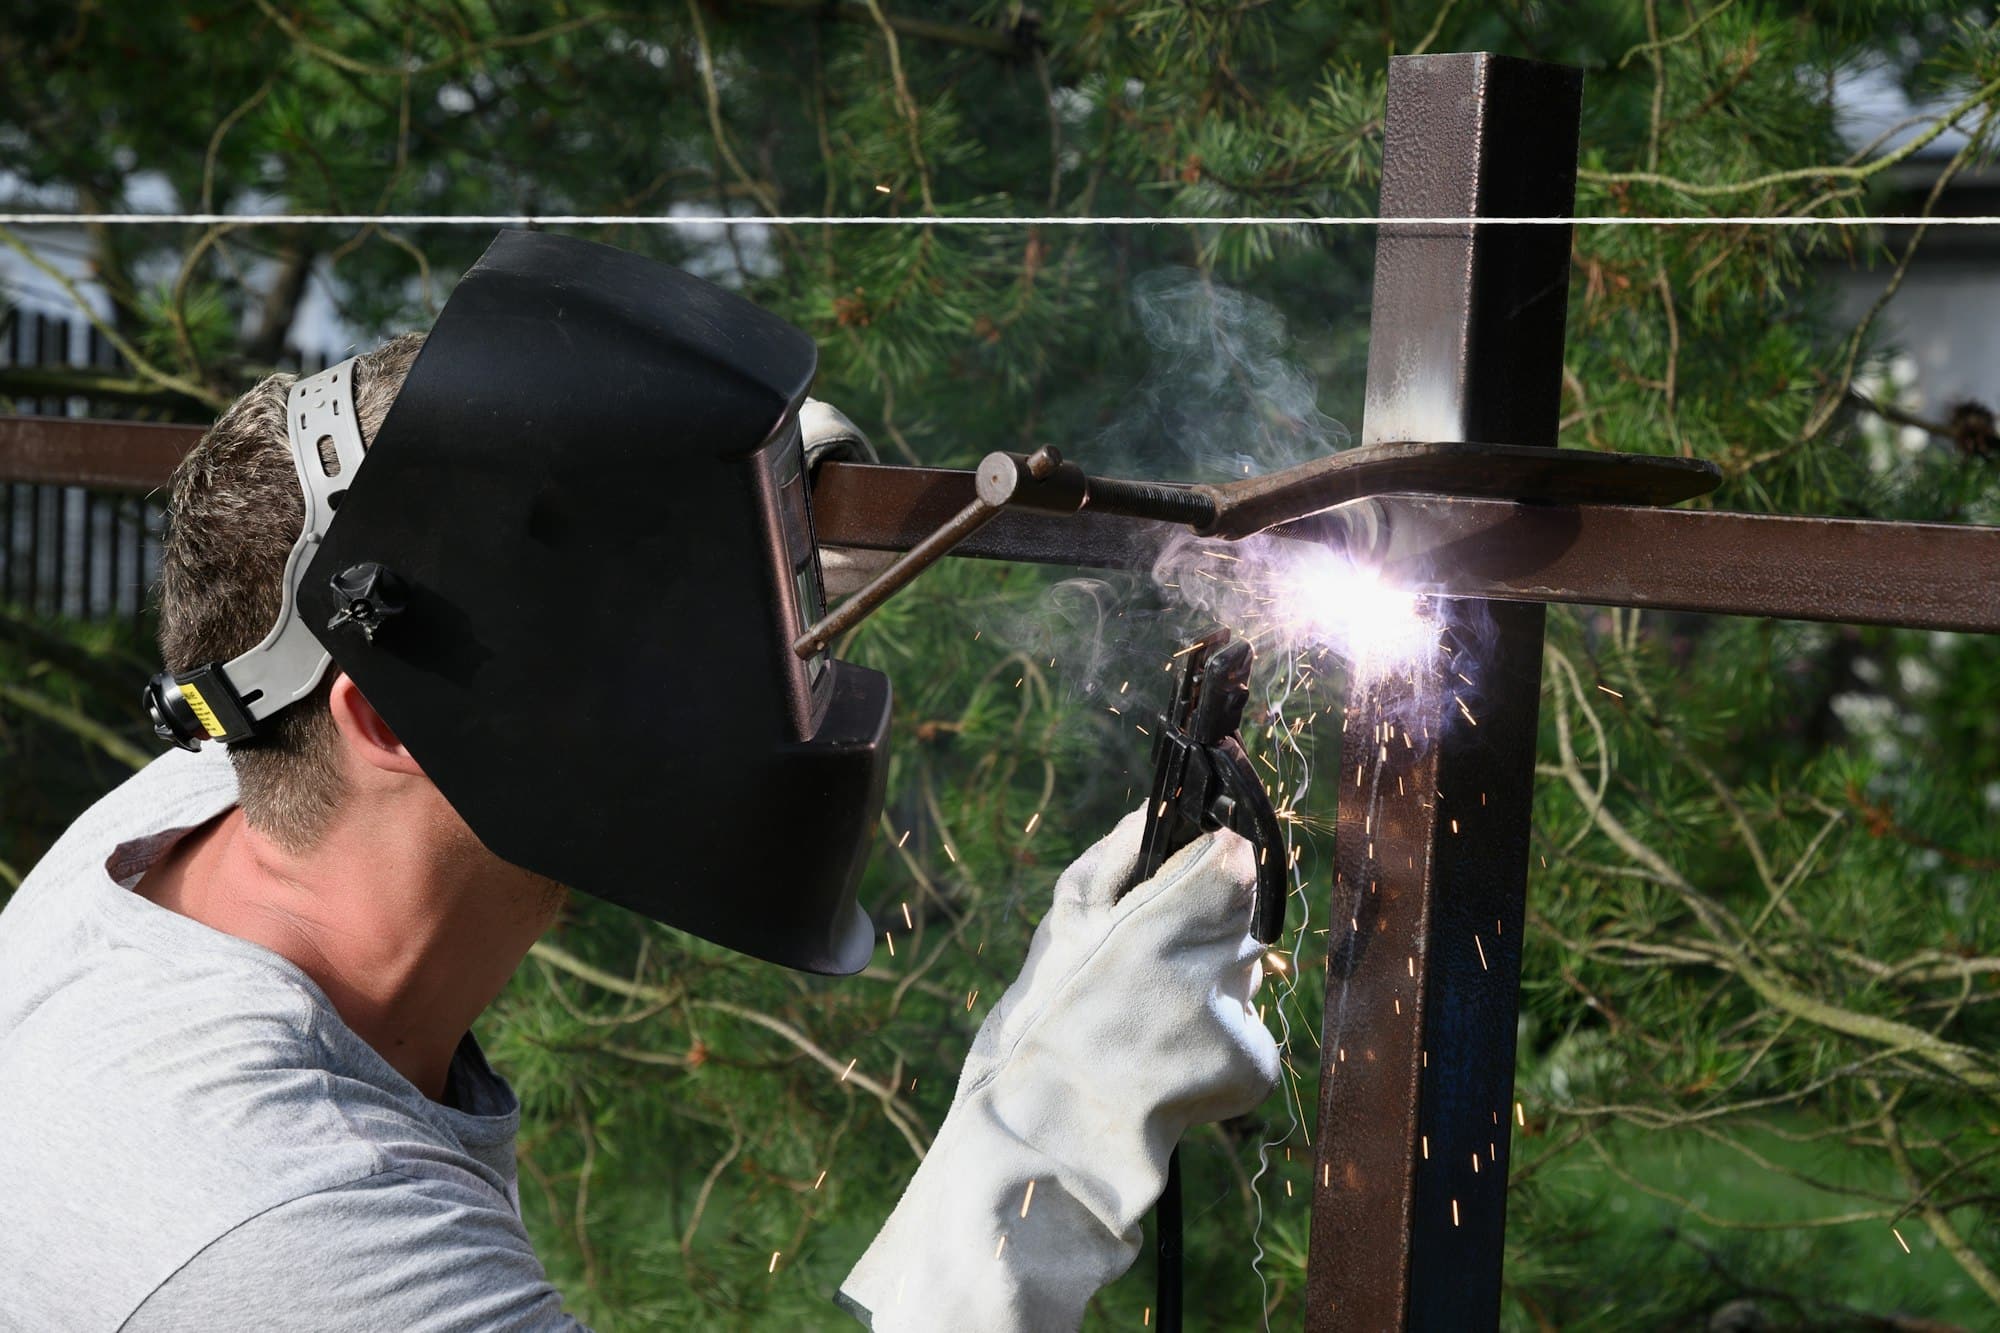 Un homme portant un masque de protection et des gants spéciaux construit une clôture métallique en train de souder.